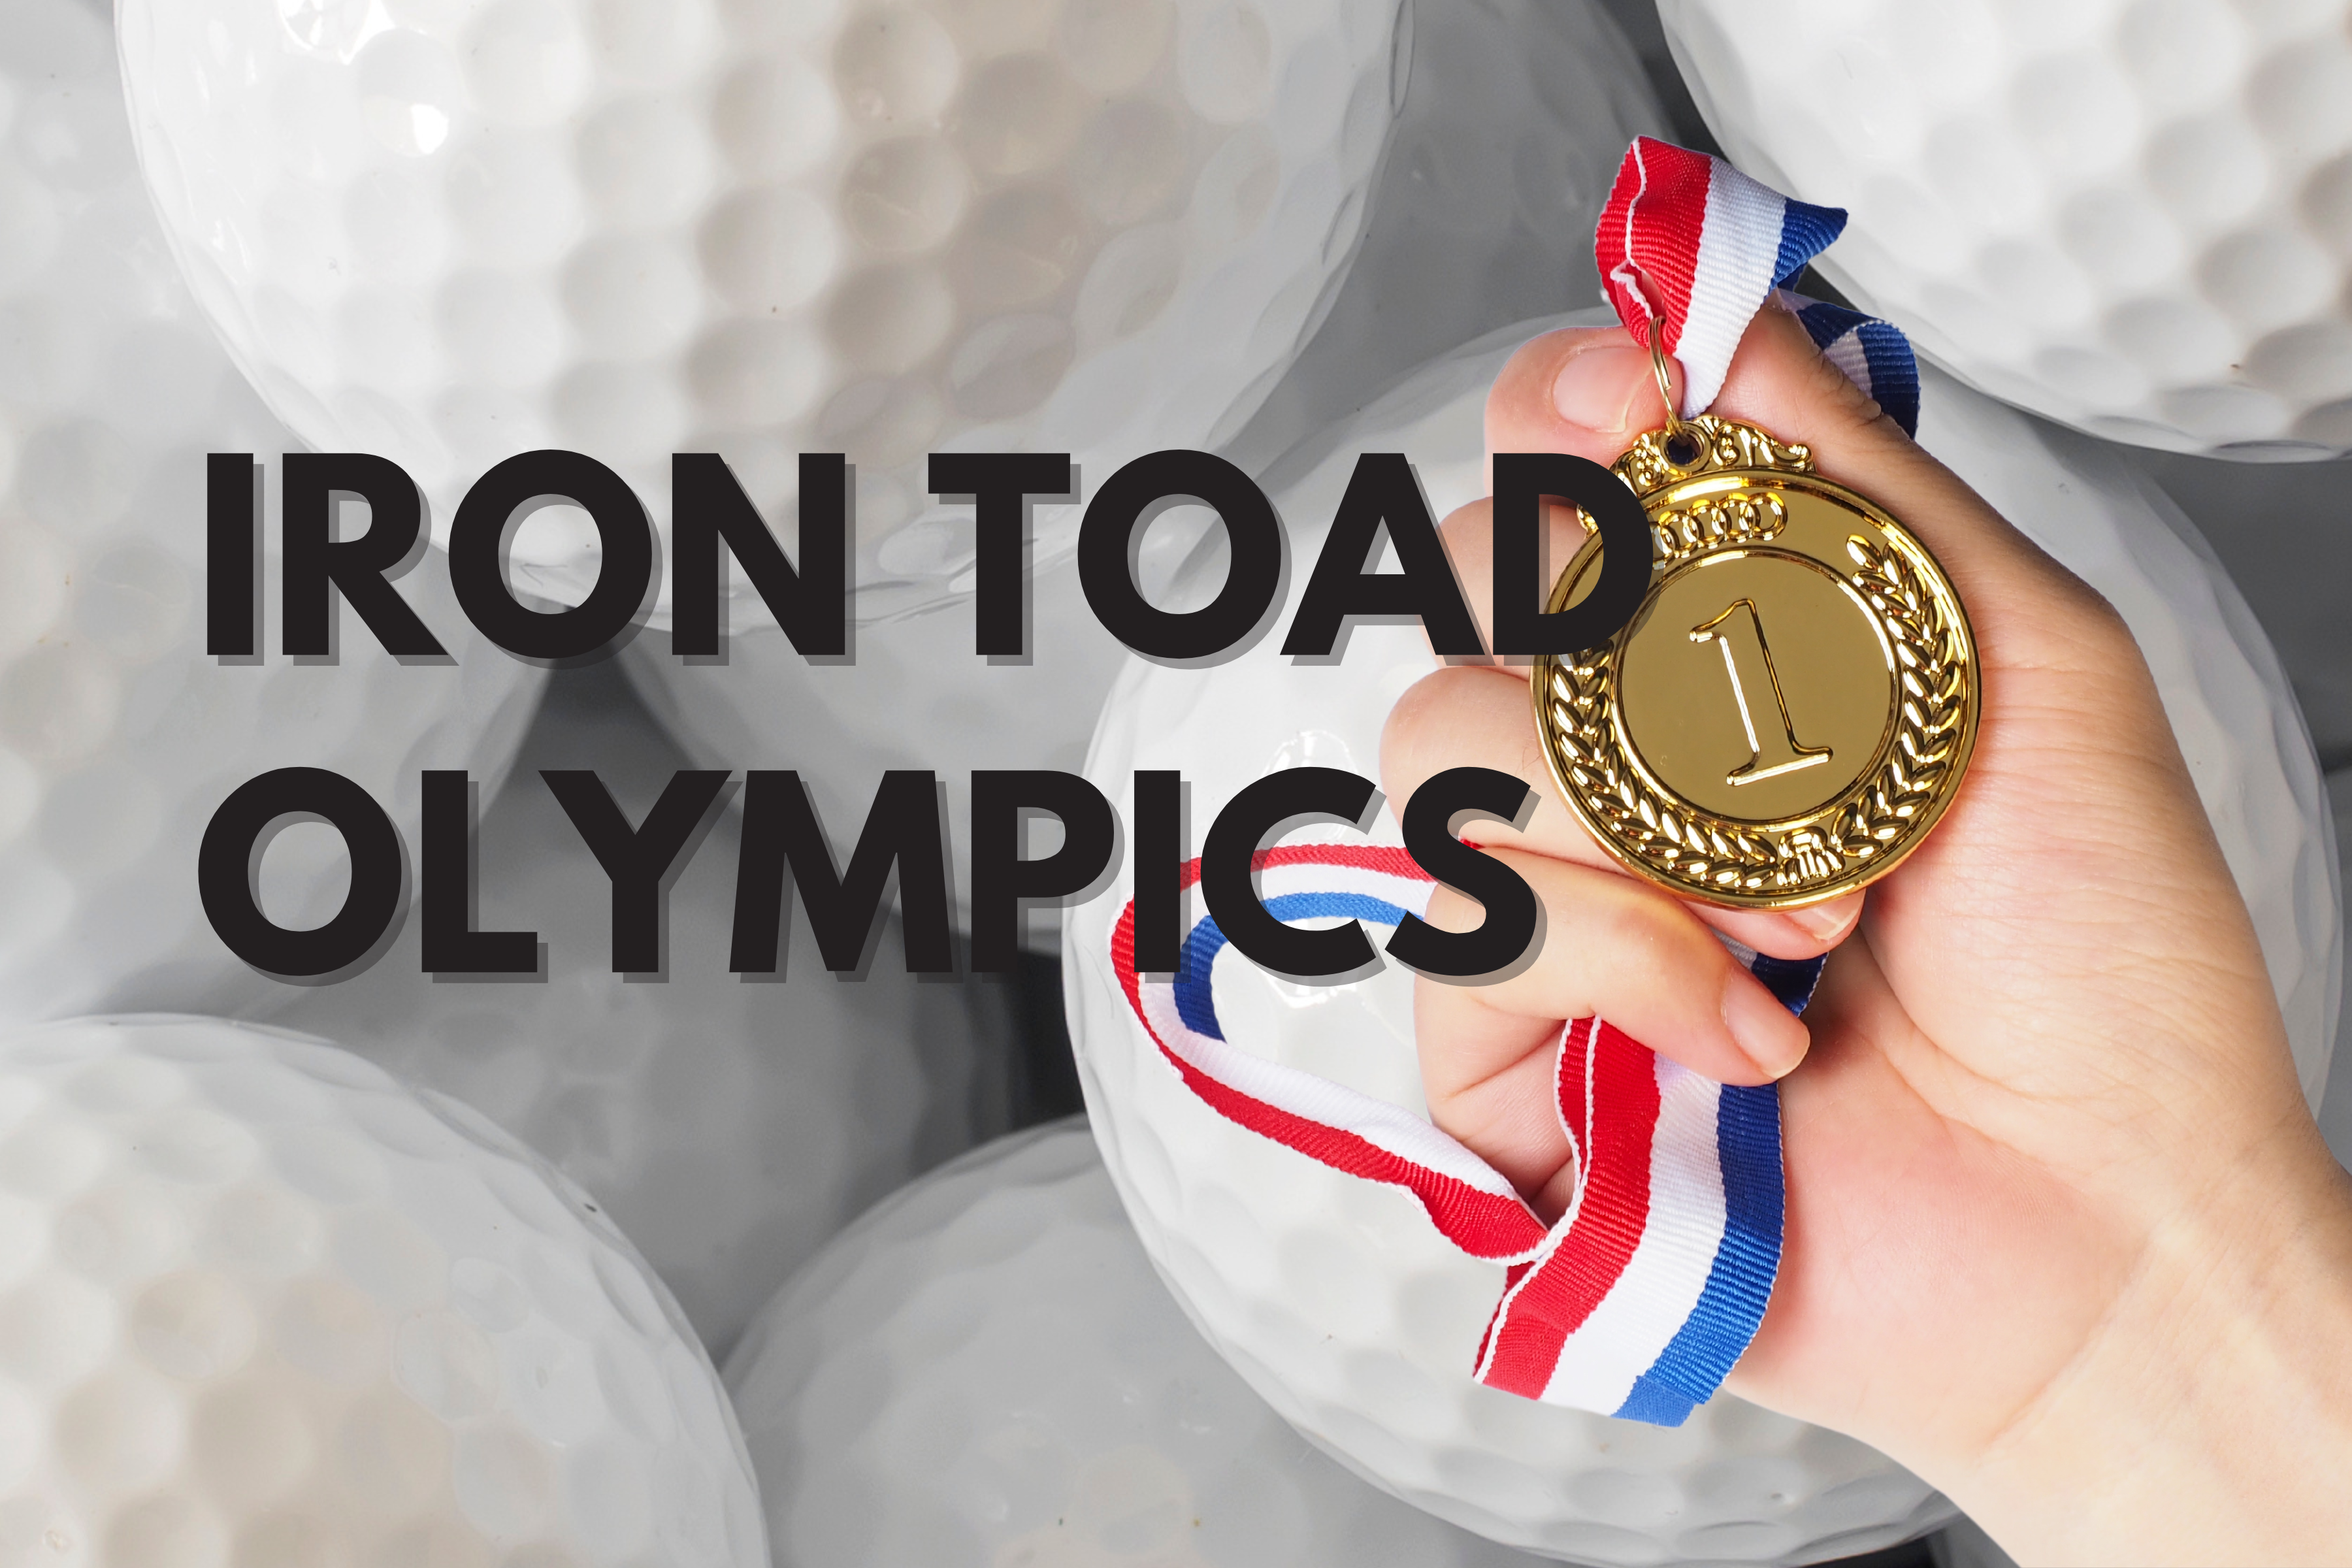 Iron Toad Olympics